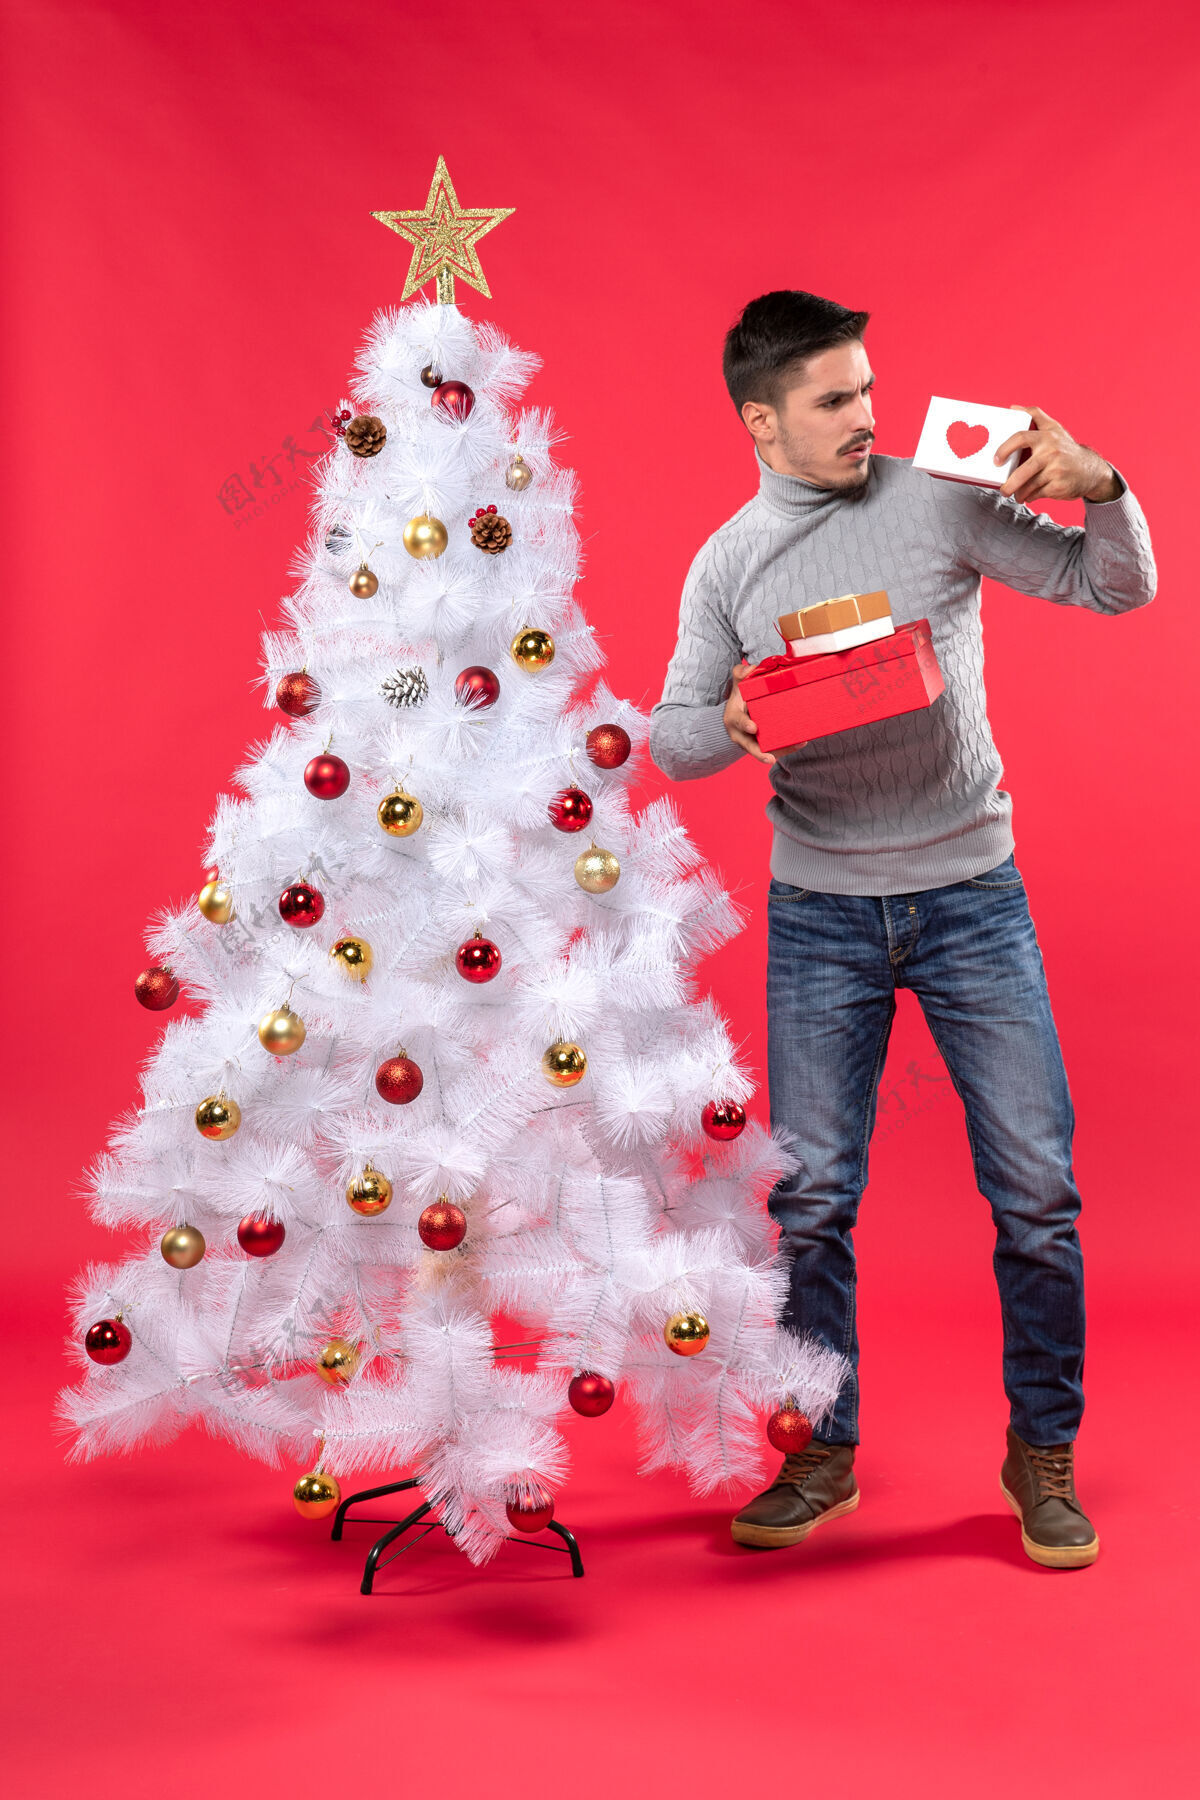 漂亮困惑的年轻人穿着灰色上衣站在装饰过的圣诞树旁 手里拿着红色的礼物年轻人可爱礼物